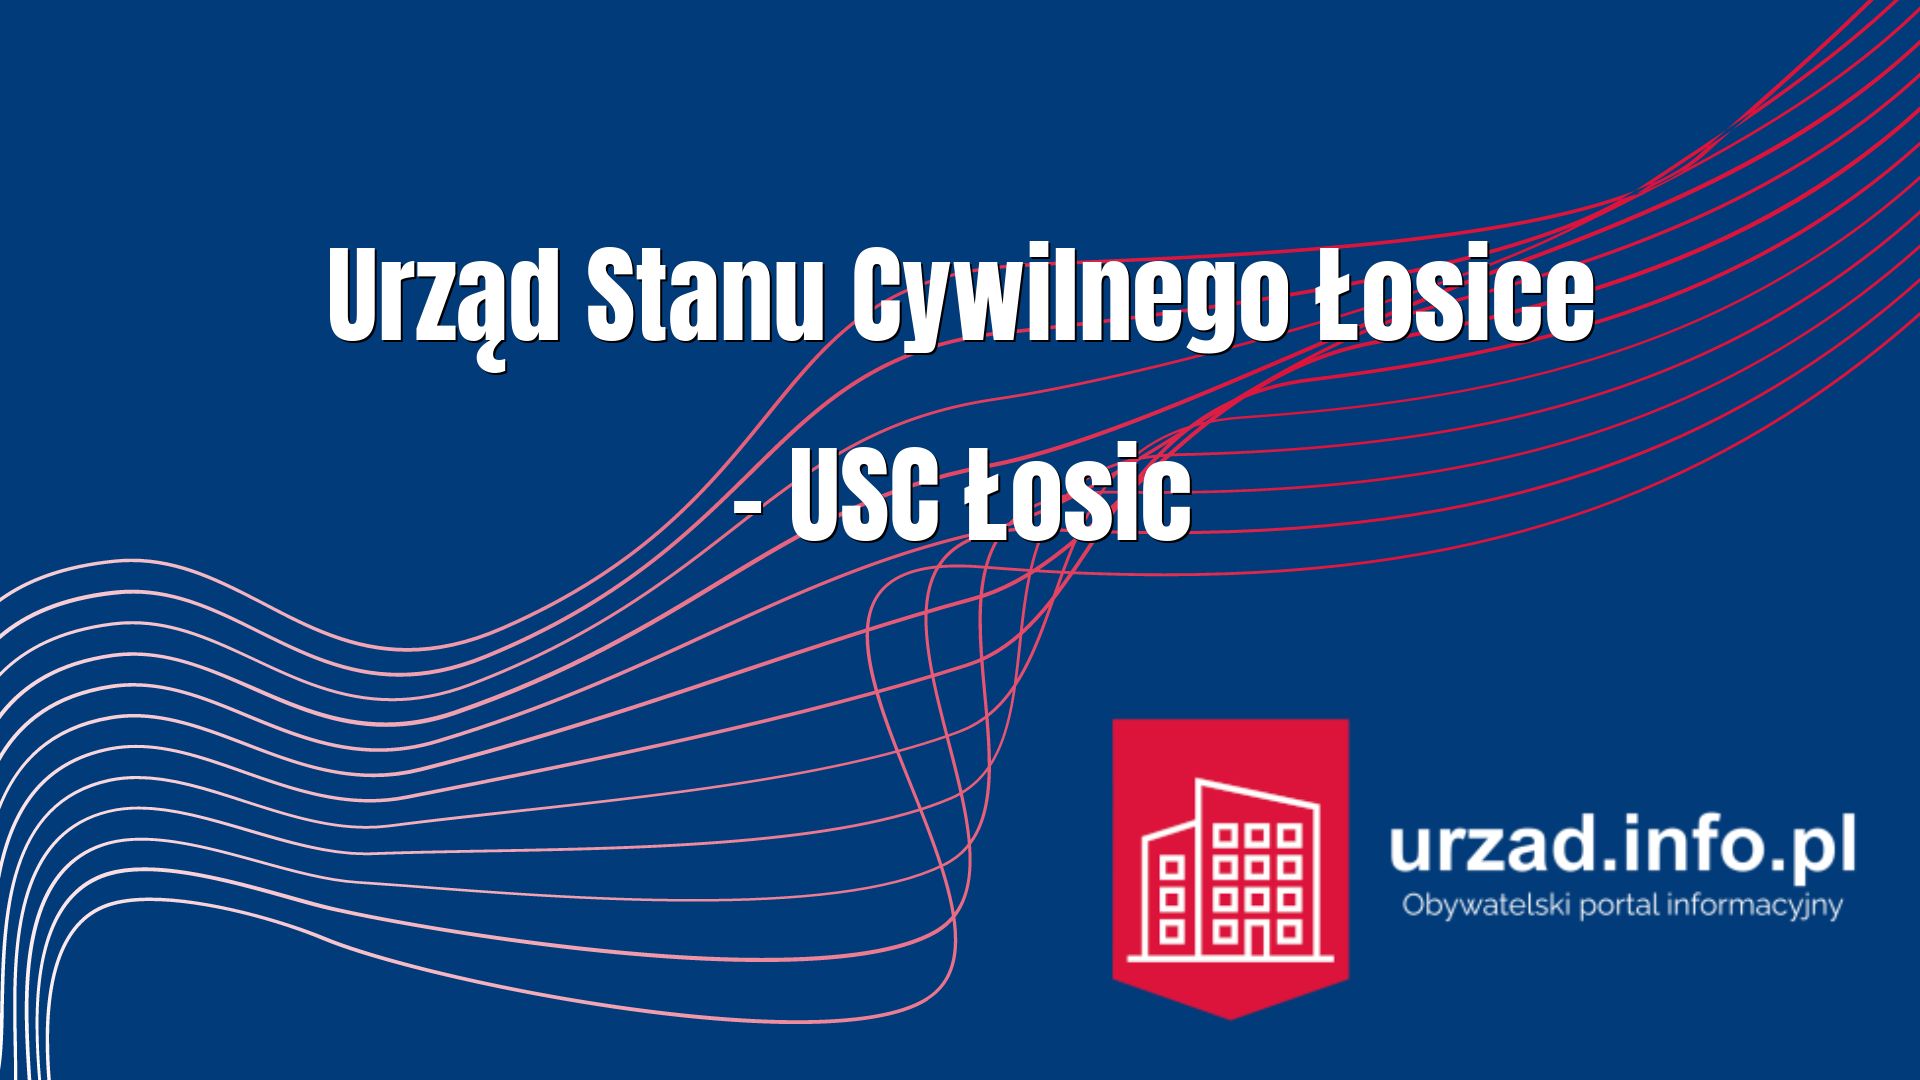 Urząd Stanu Cywilnego Łosice – USC Łosic